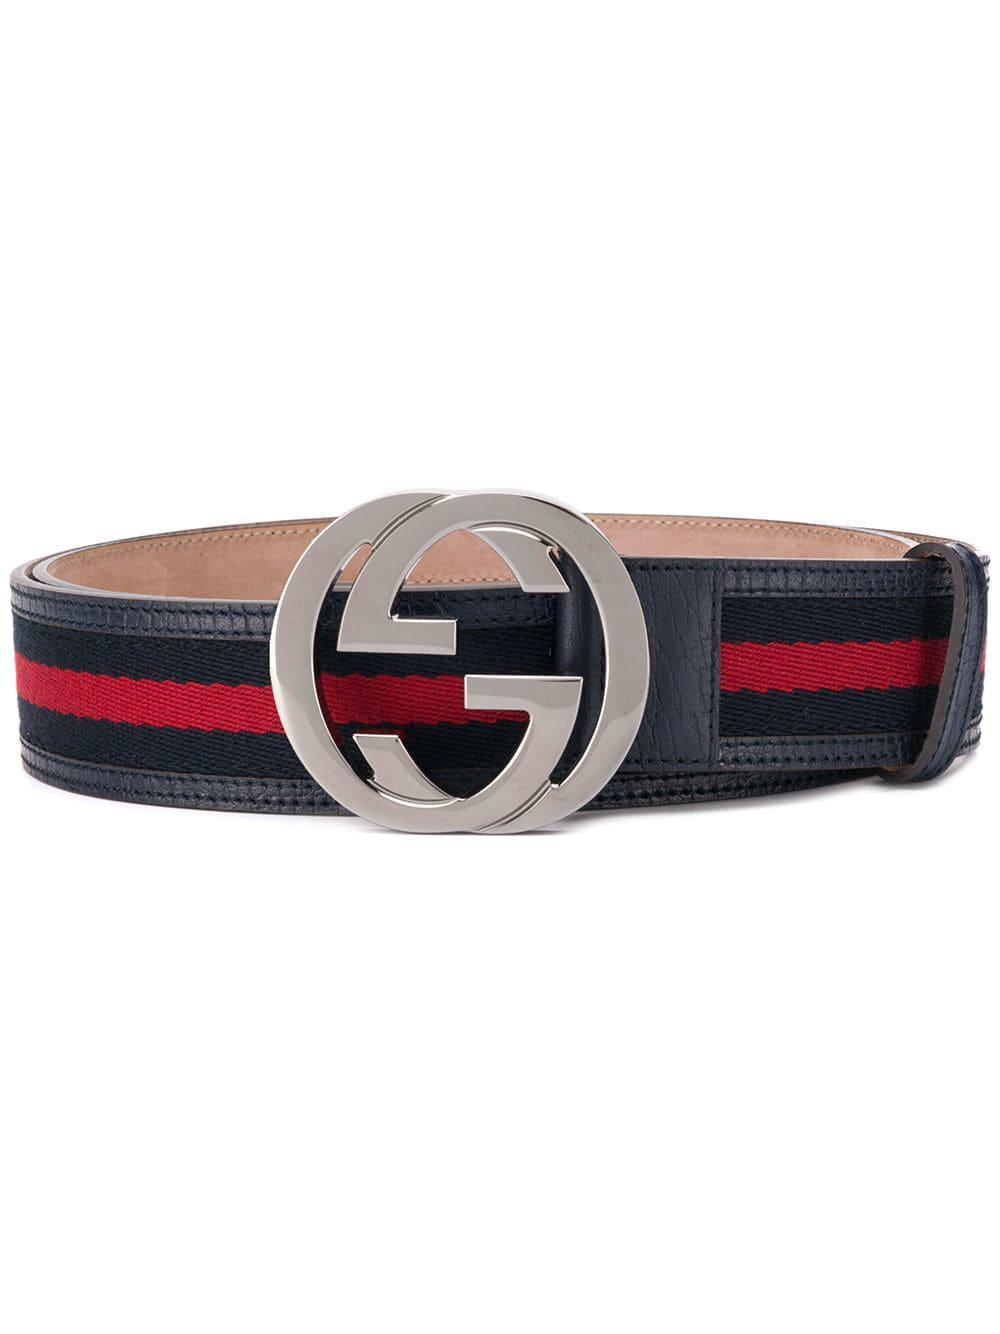 gucci blue red belt